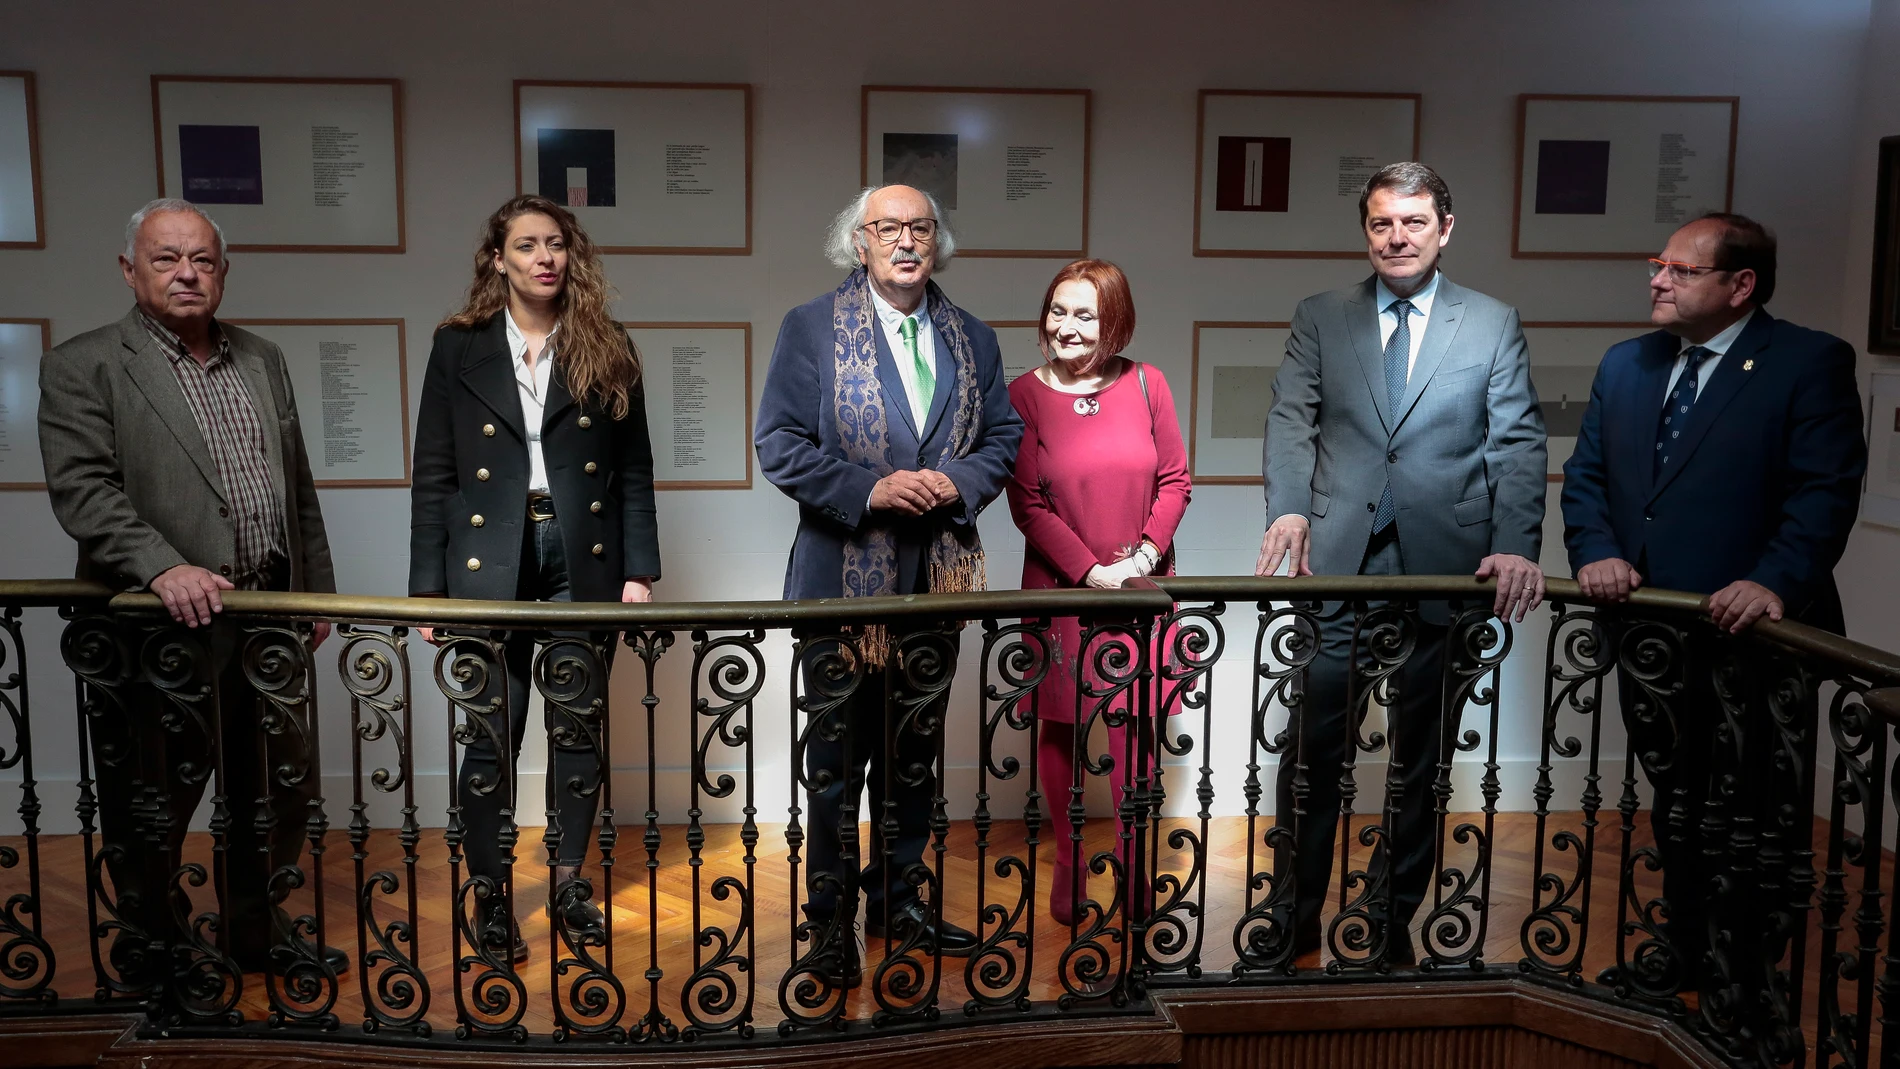 El presidente Alfonso Fernández Mañueco, junto a Gonzalo Santonja, Ester Muñoz, Javier Carrera y Antonio Colinas inauguran el centro cultural